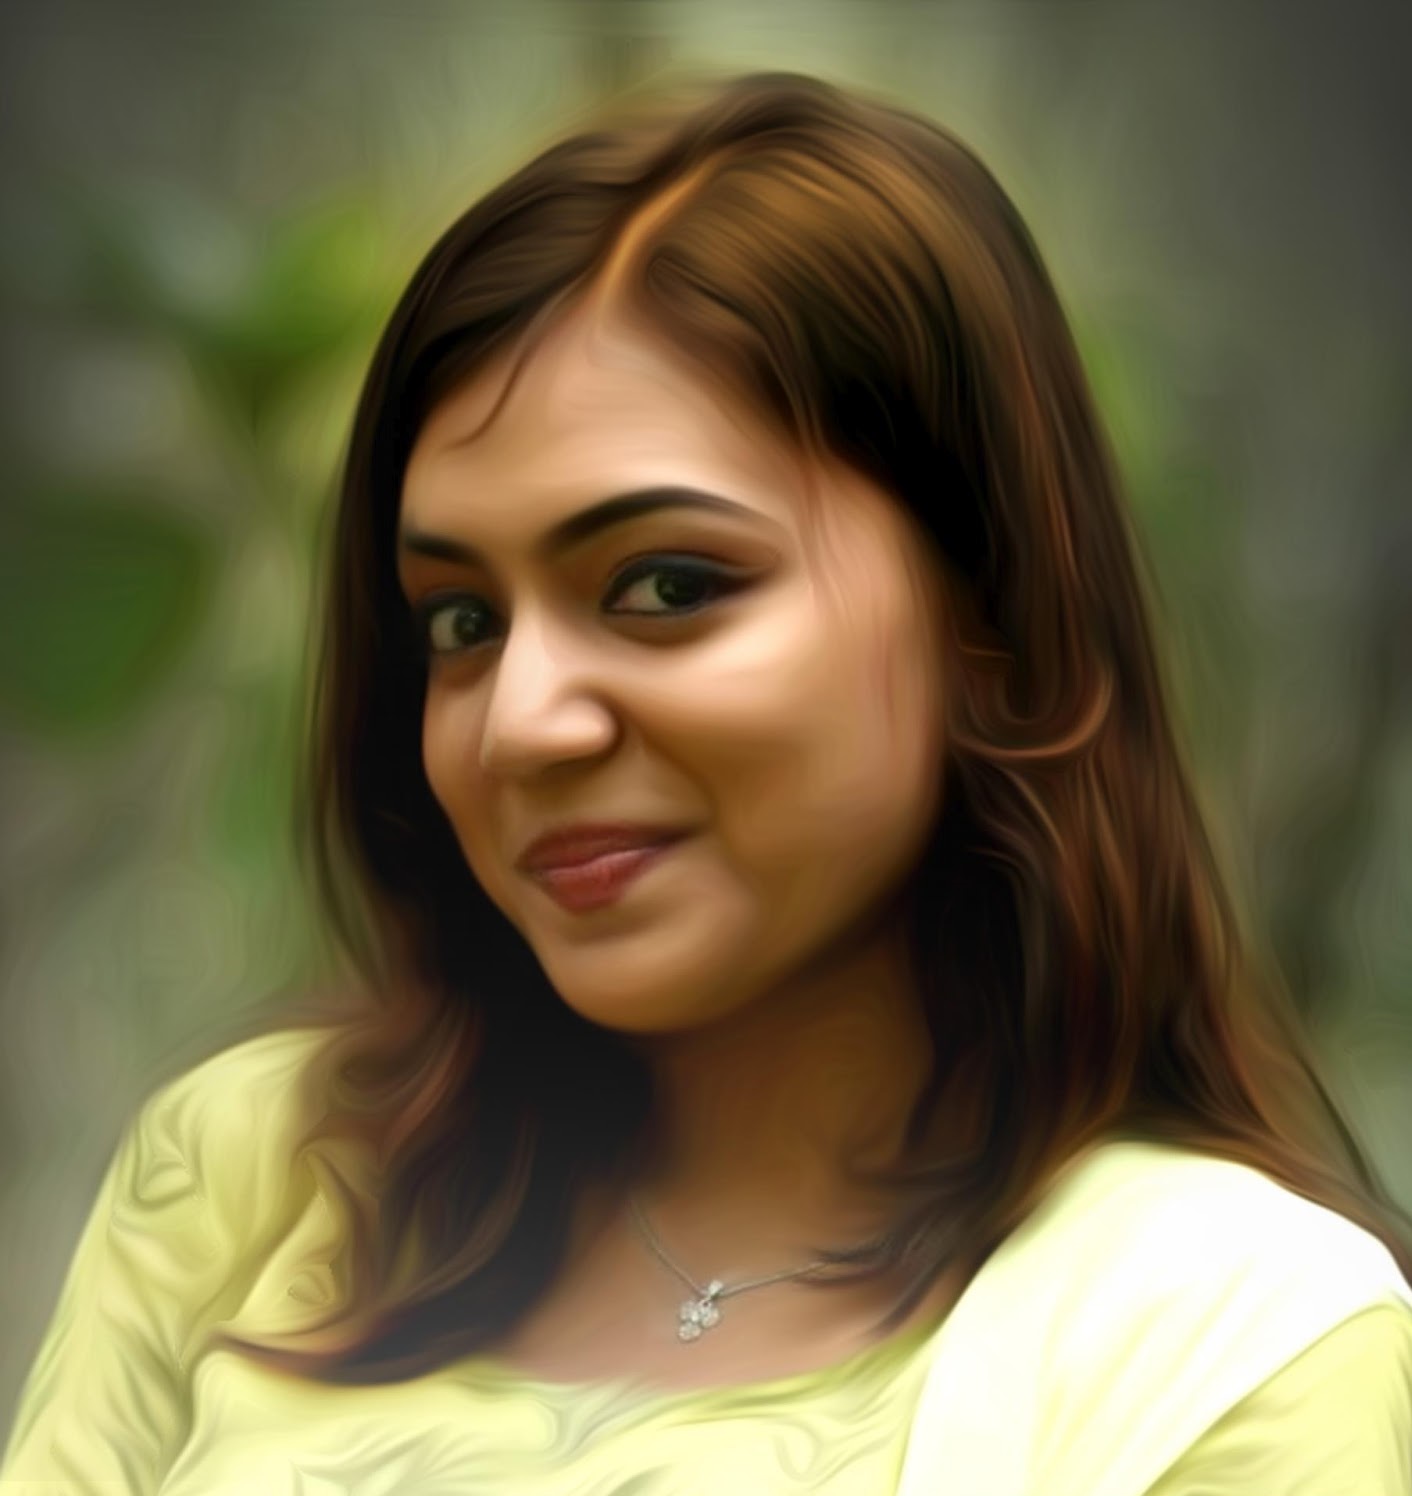 tamilische filme hd wallpaper 1080p,haar,gesicht,augenbraue,frisur,schönheit